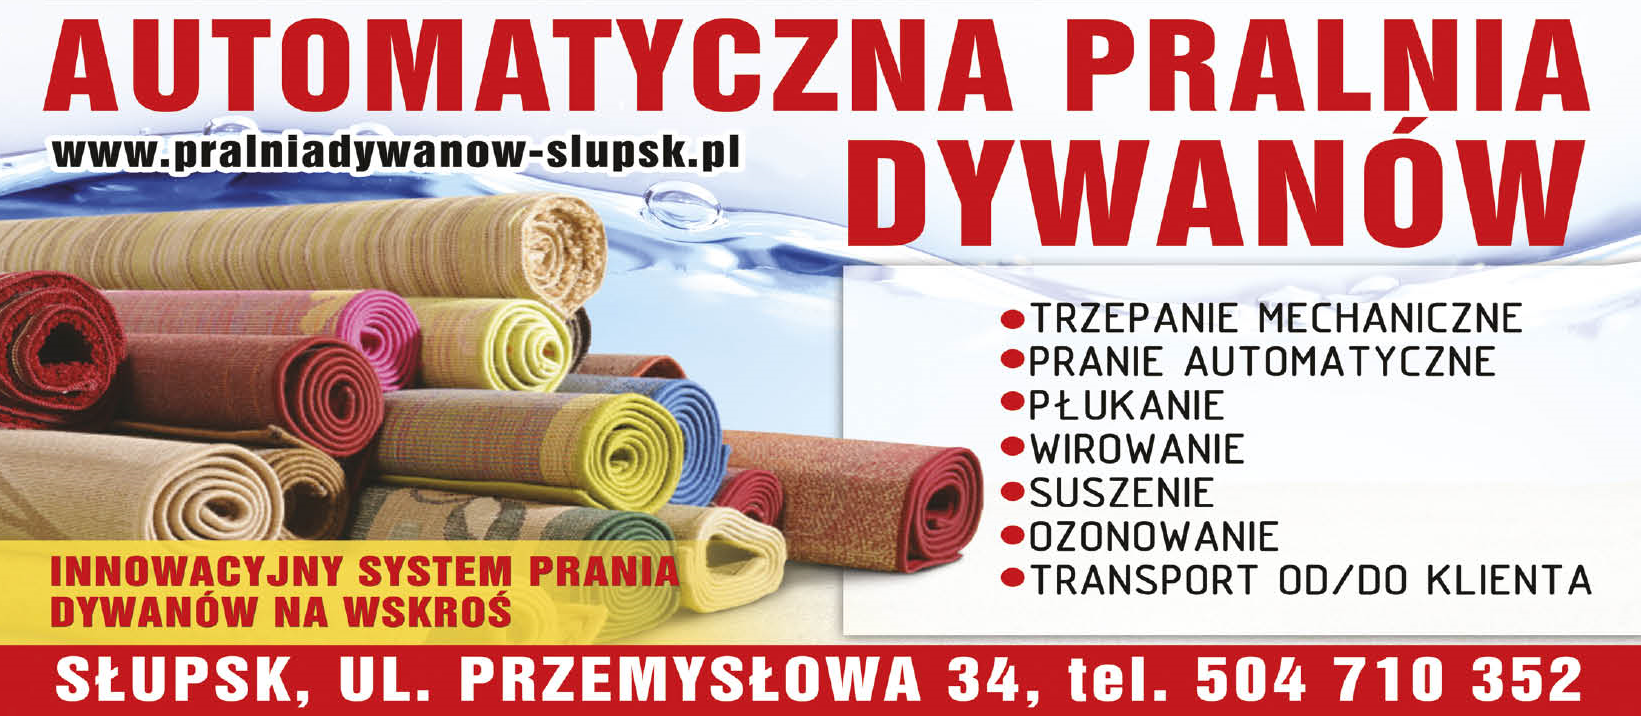 PRALNIA DYWANÓW "NEW LINE" Słupsk Trzepanie Mechaniczne / Pranie Automatyczne / Płukanie / Wirowanie